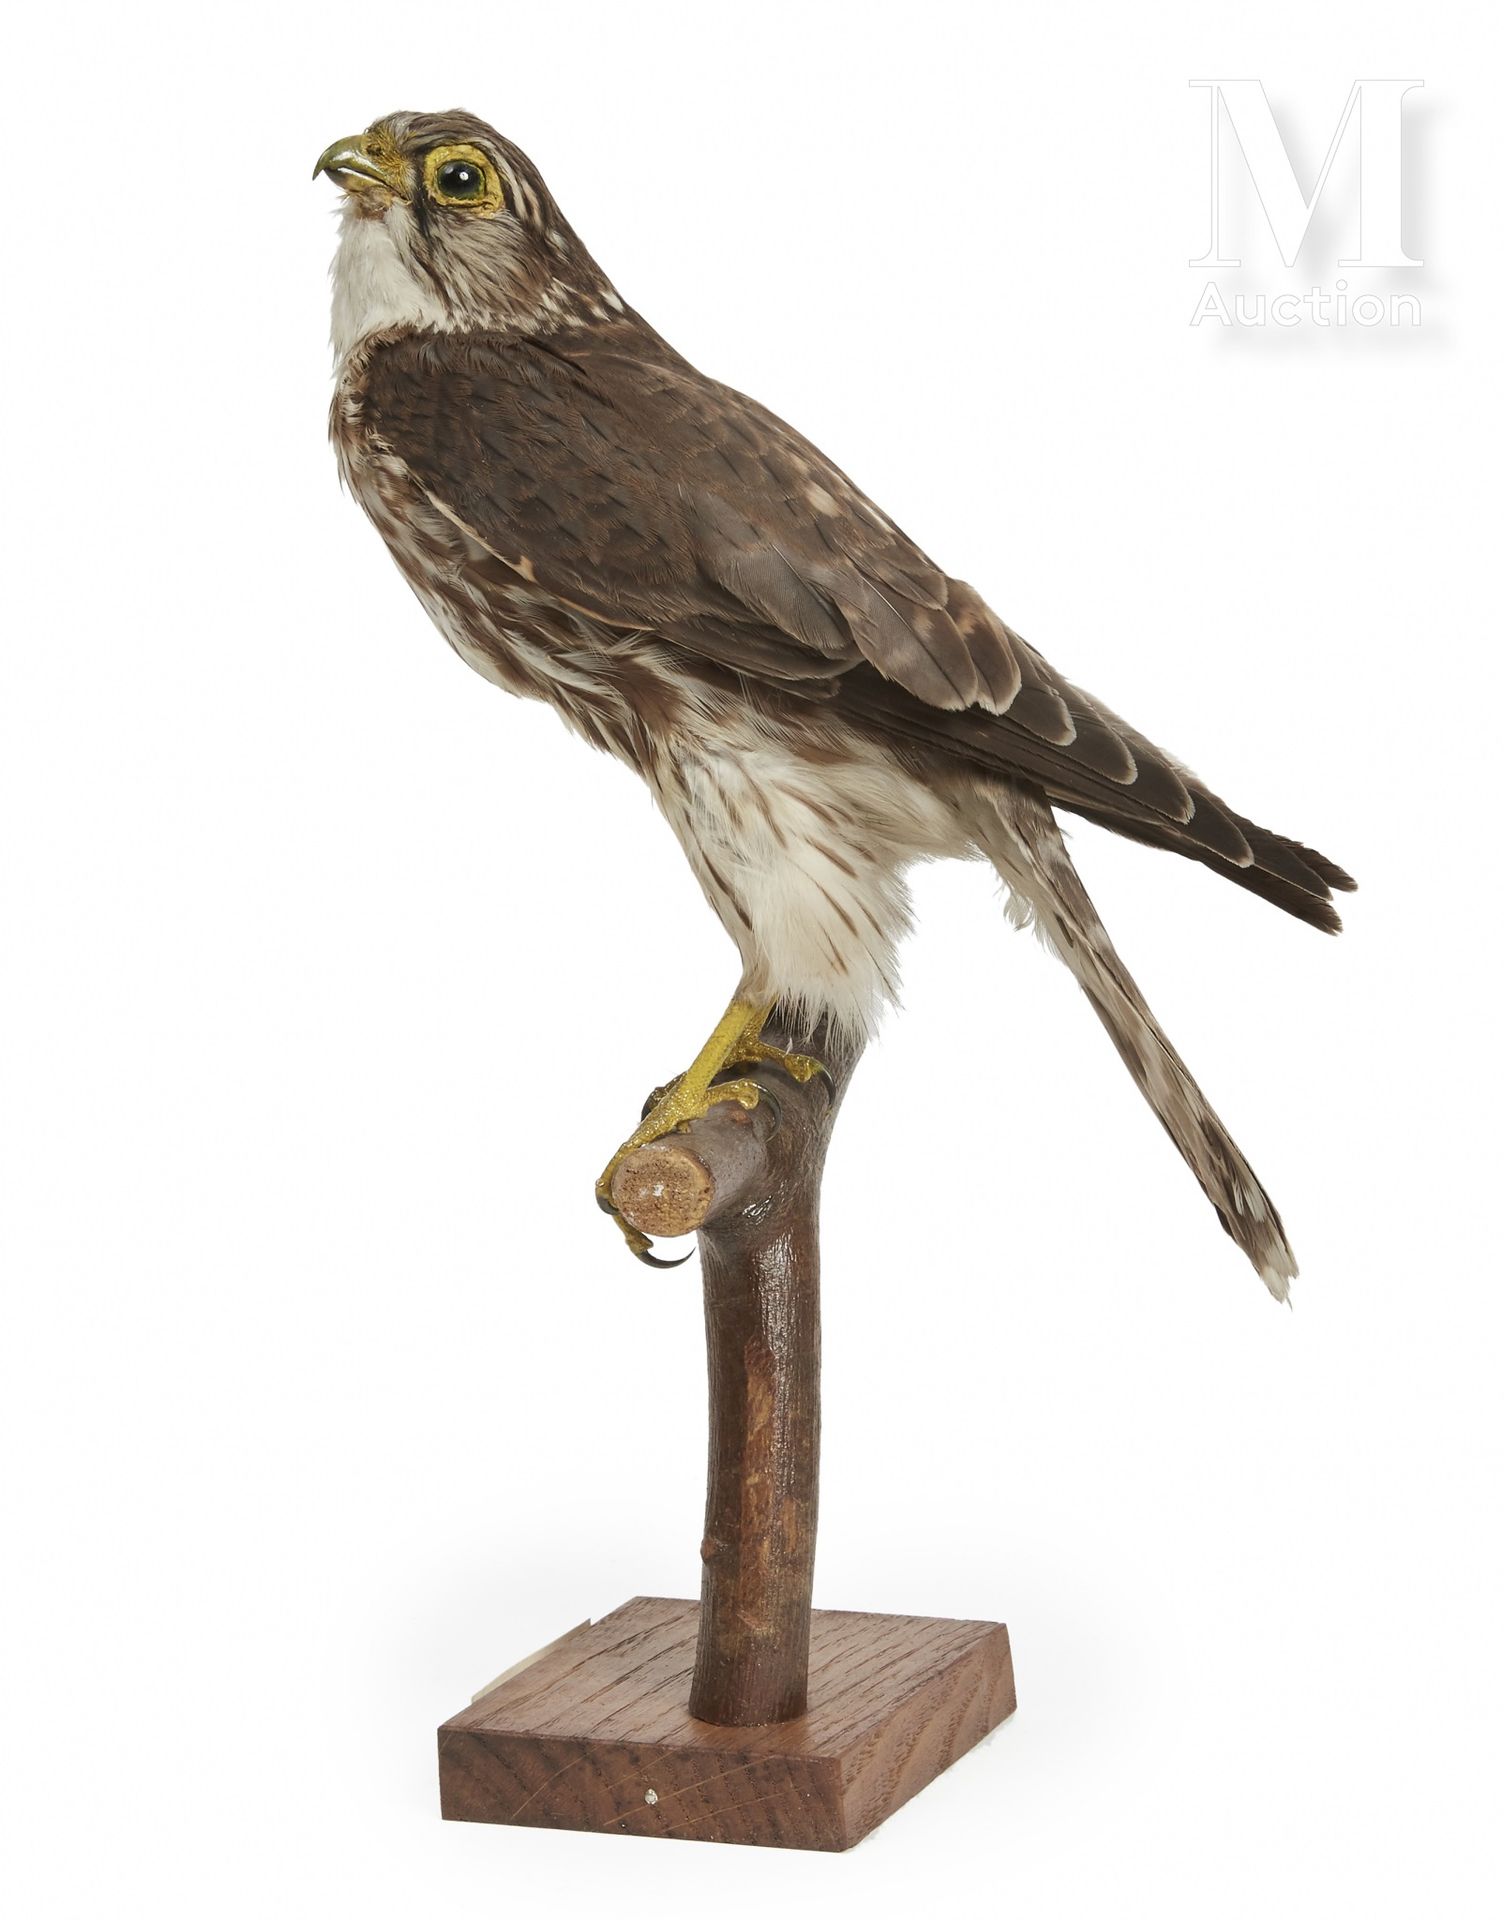 FAUCON ÉMERILLON I/A, Falco columbarius, CIC于2018年9月6日发行。



出处

约瑟夫-韦德里纳收藏（1928&hellip;